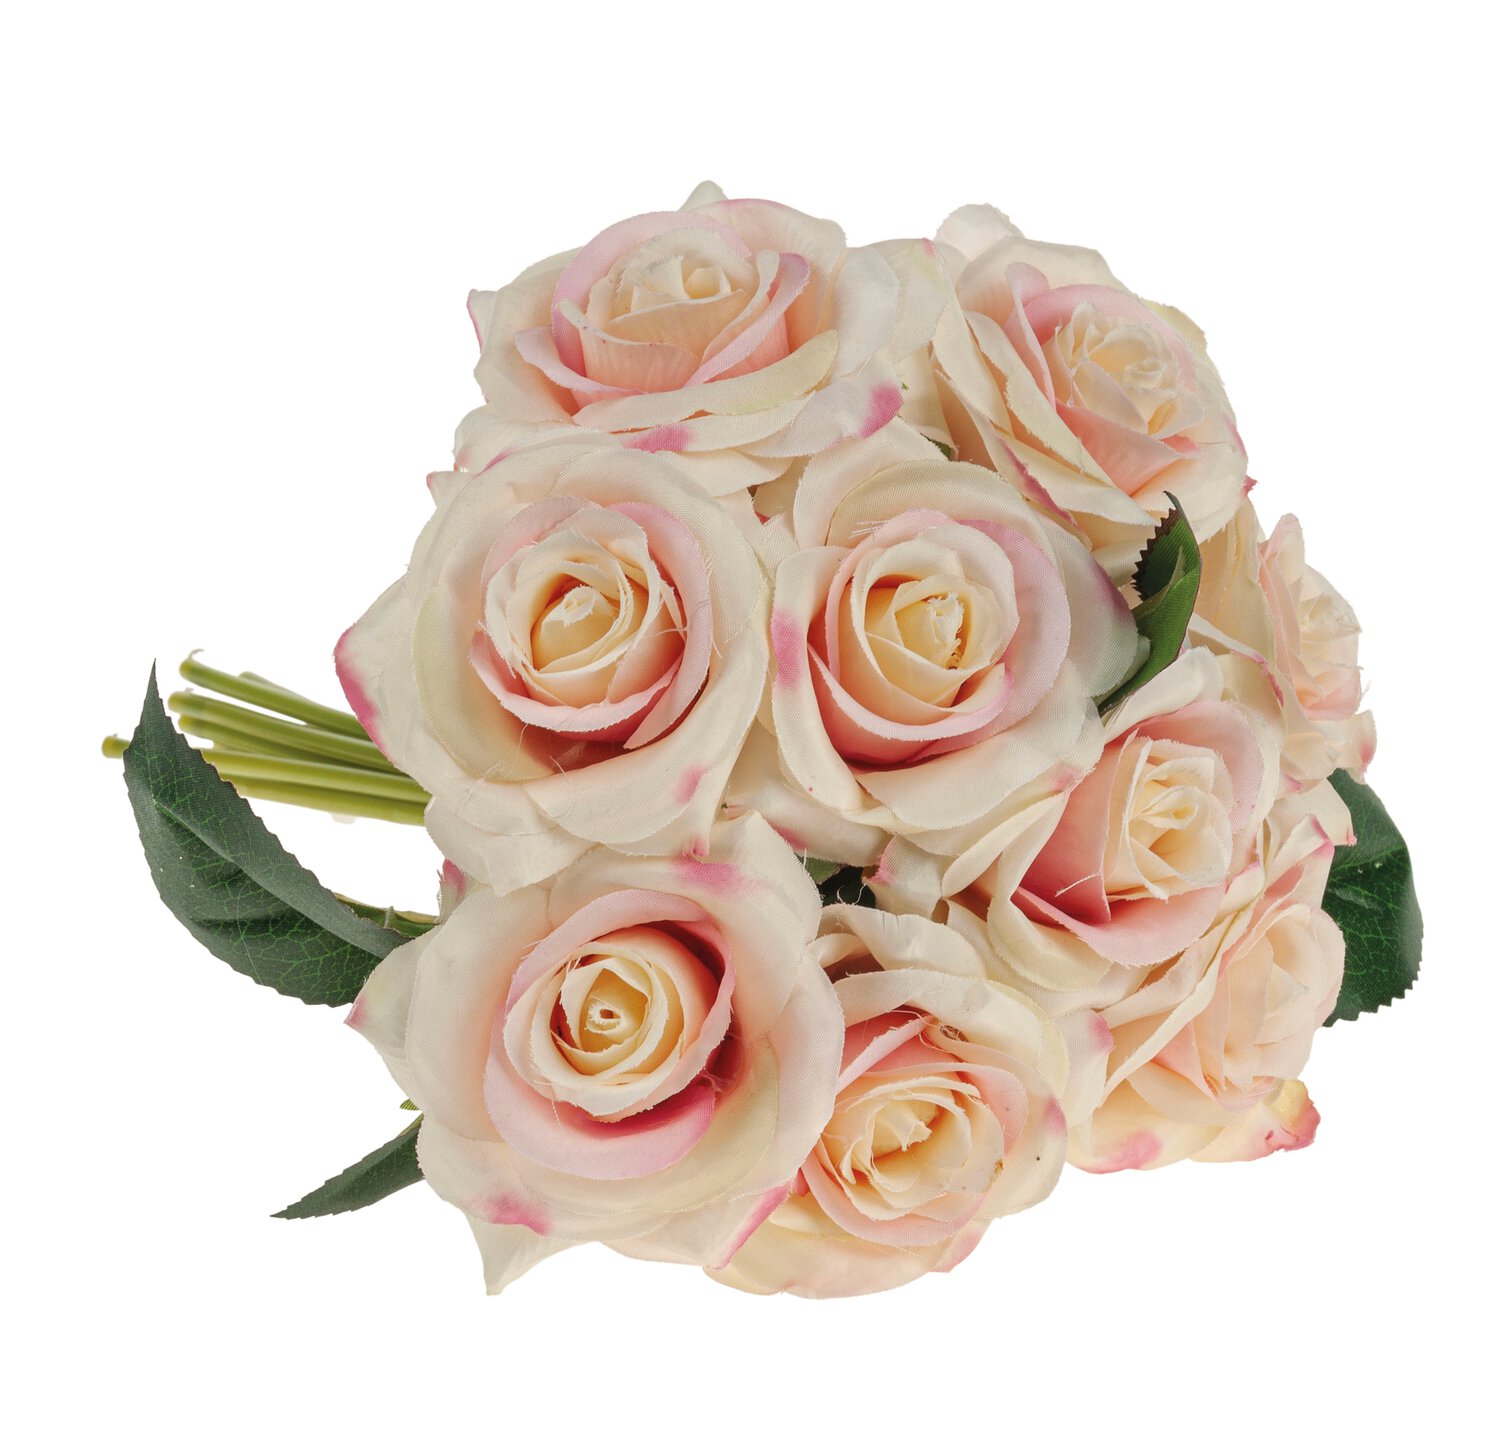 Künstlicher Blumenstrauß aus 9 Rosen, 25 cm, weiß-rosa